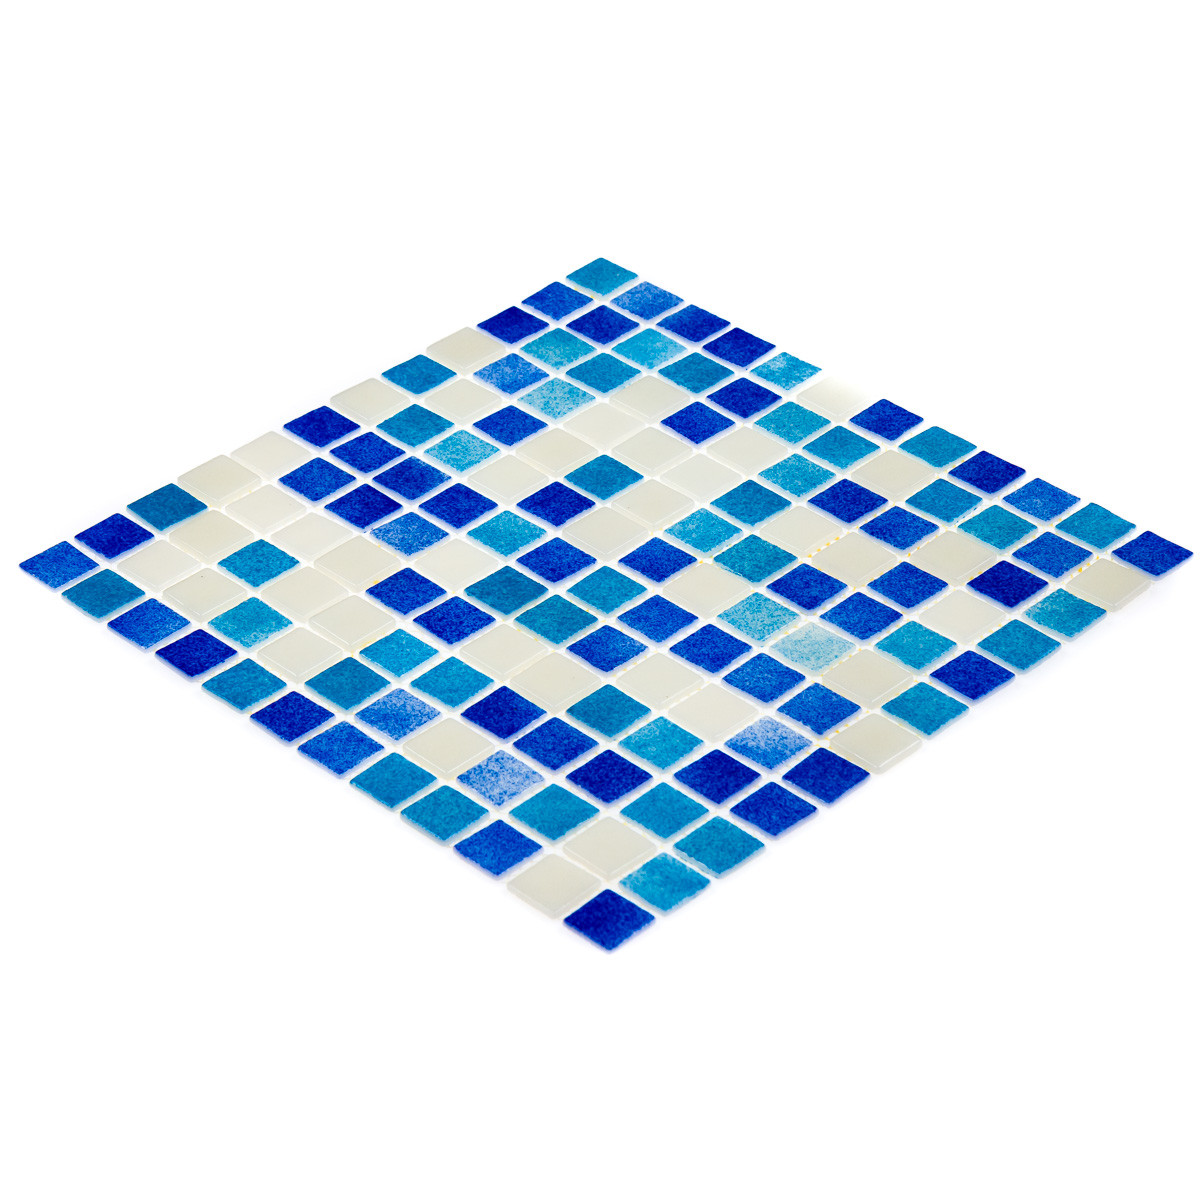 Мозаїка АкваМо блакитний мікс  MX25-1/01-2/02/03 31.7x31.7 скляна для ванни, душової, кухні, хамама, басейну